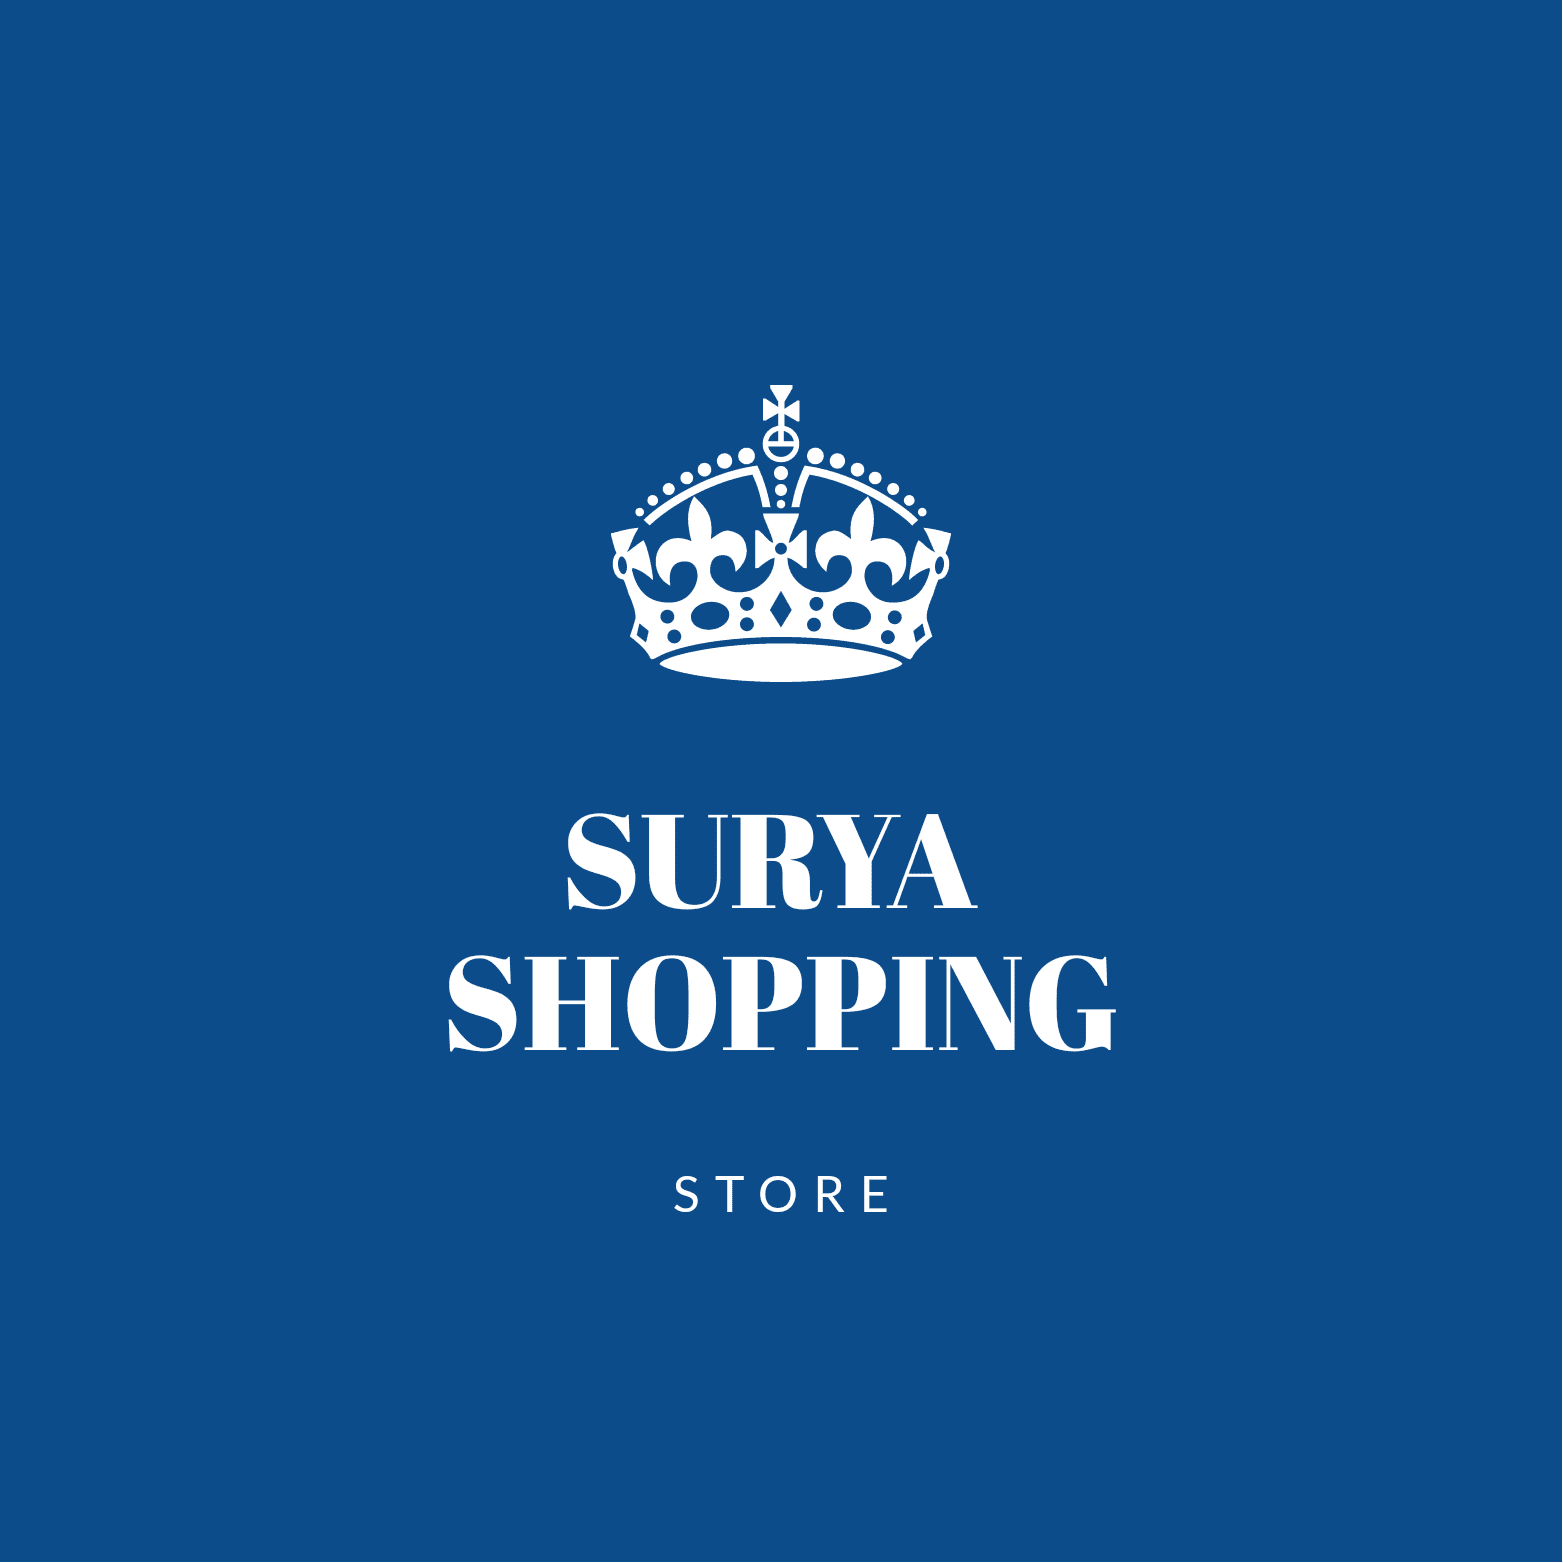 Surya Shopping